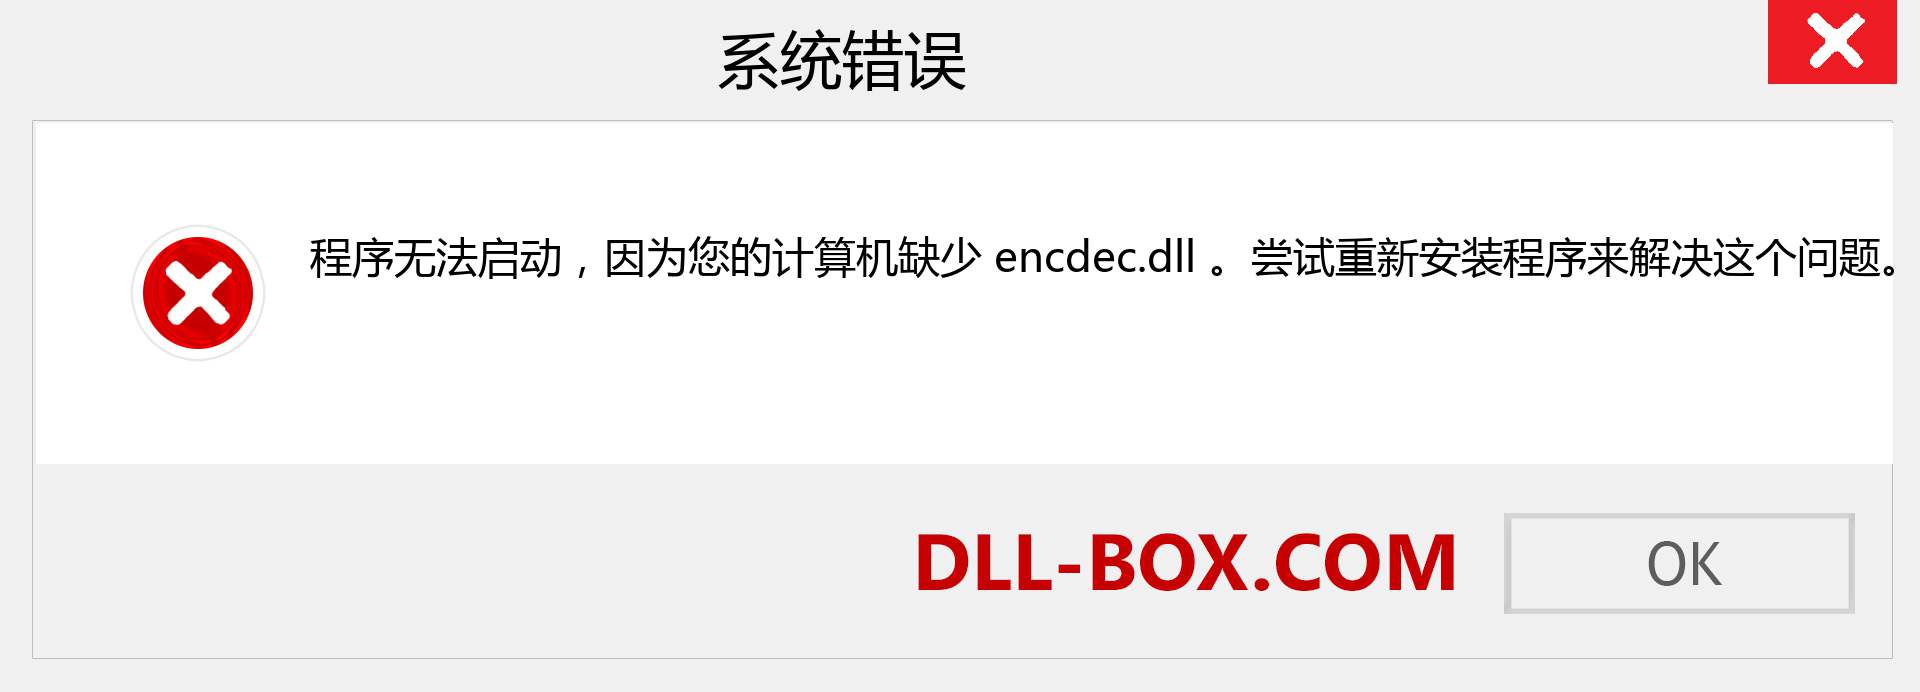 encdec.dll 文件丢失？。 适用于 Windows 7、8、10 的下载 - 修复 Windows、照片、图像上的 encdec dll 丢失错误